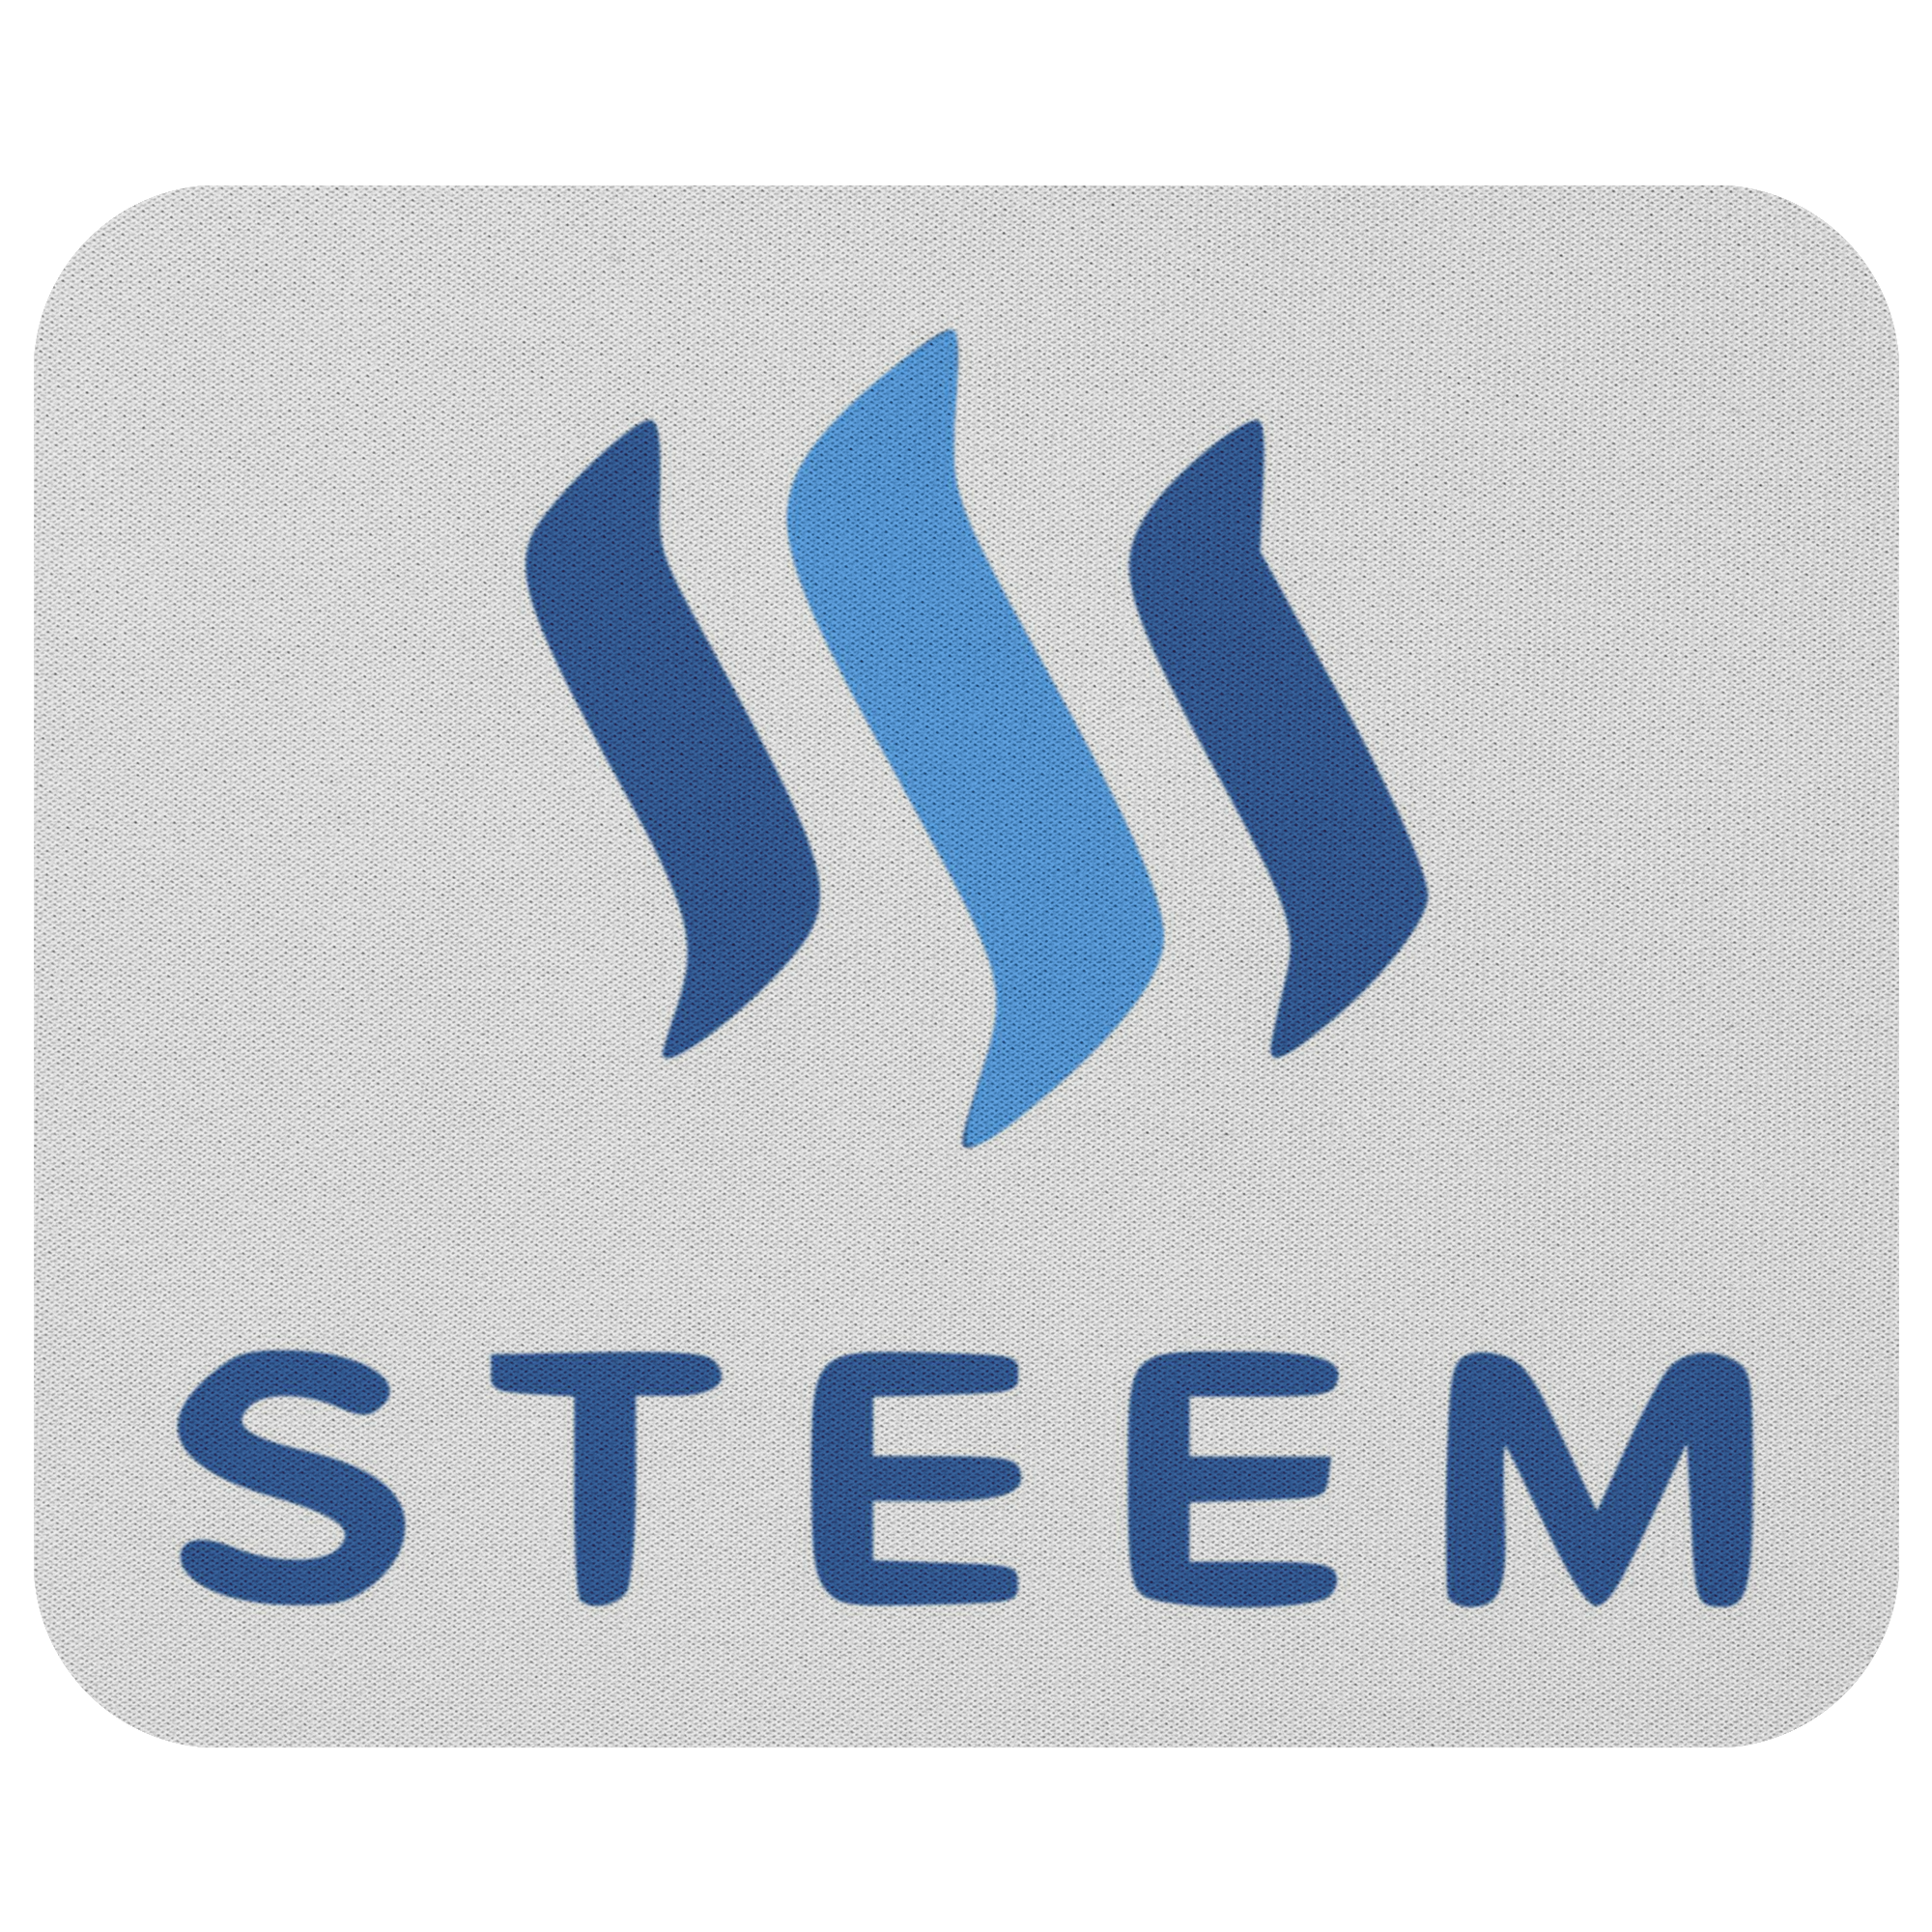 Steem - Bàn di chuột TCP1607 Steem1 Hàng hóa tiền điện tử chính thức